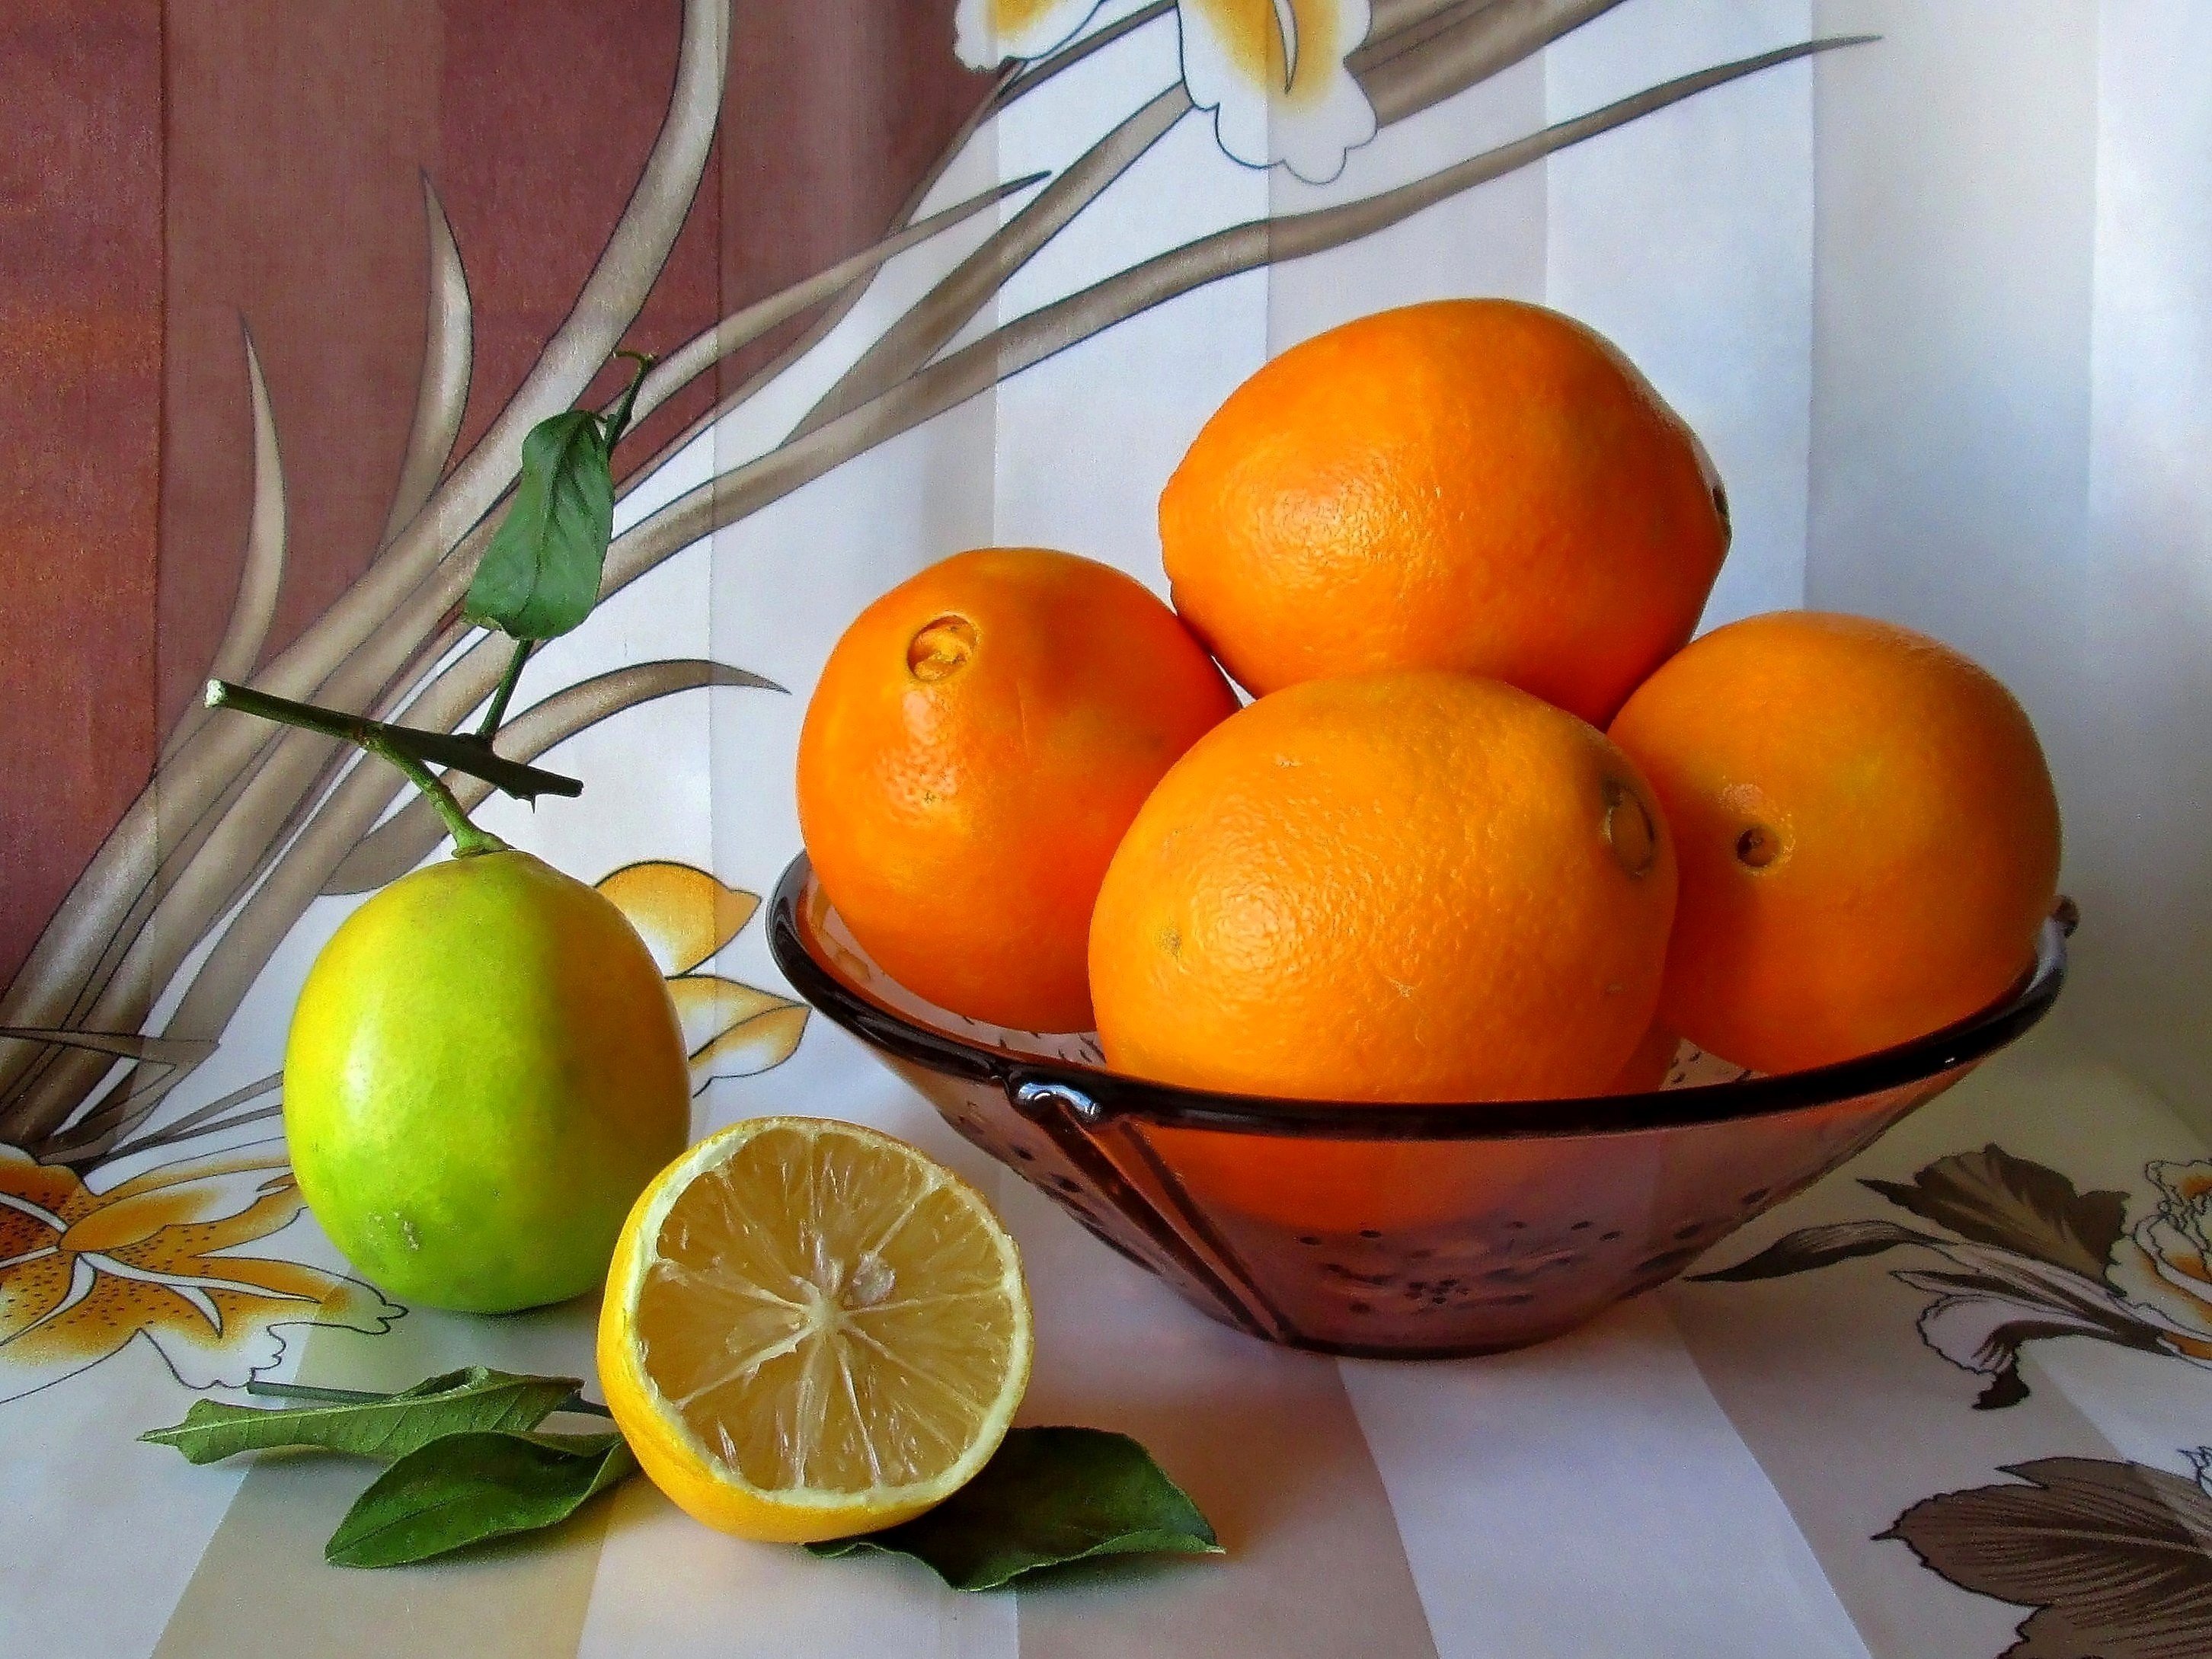 на столе лежит апельсин яблоко и банан